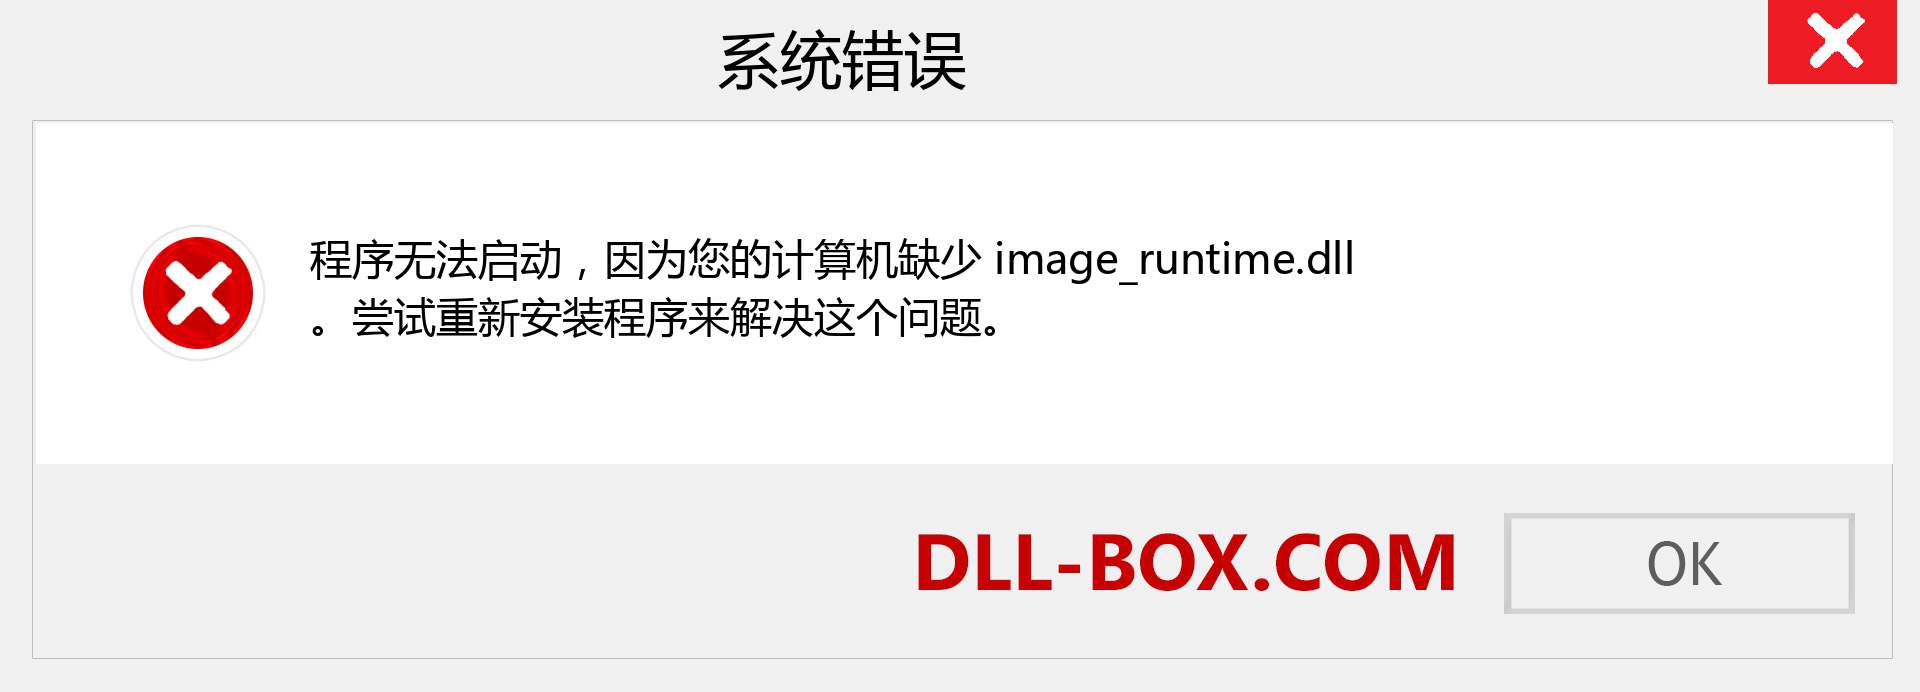 image_runtime.dll 文件丢失？。 适用于 Windows 7、8、10 的下载 - 修复 Windows、照片、图像上的 image_runtime dll 丢失错误